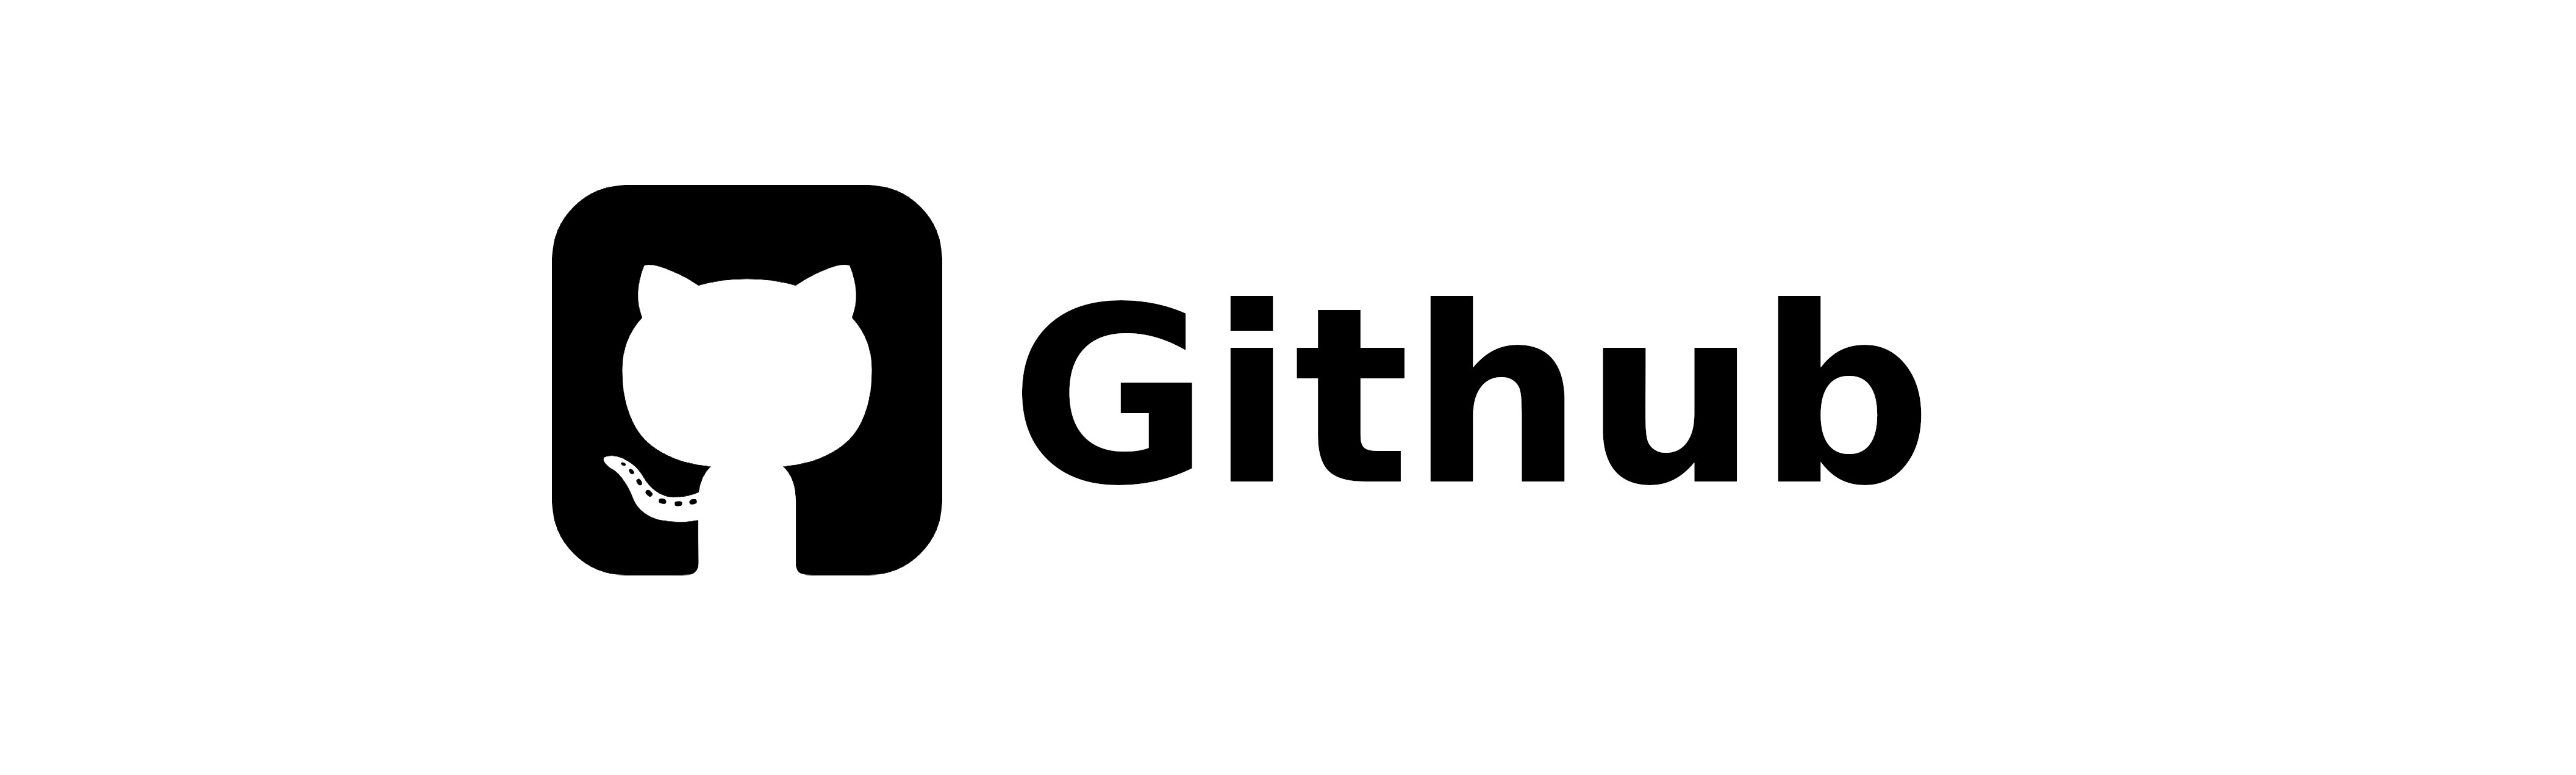 Logo Github utilisé pour la FAQ